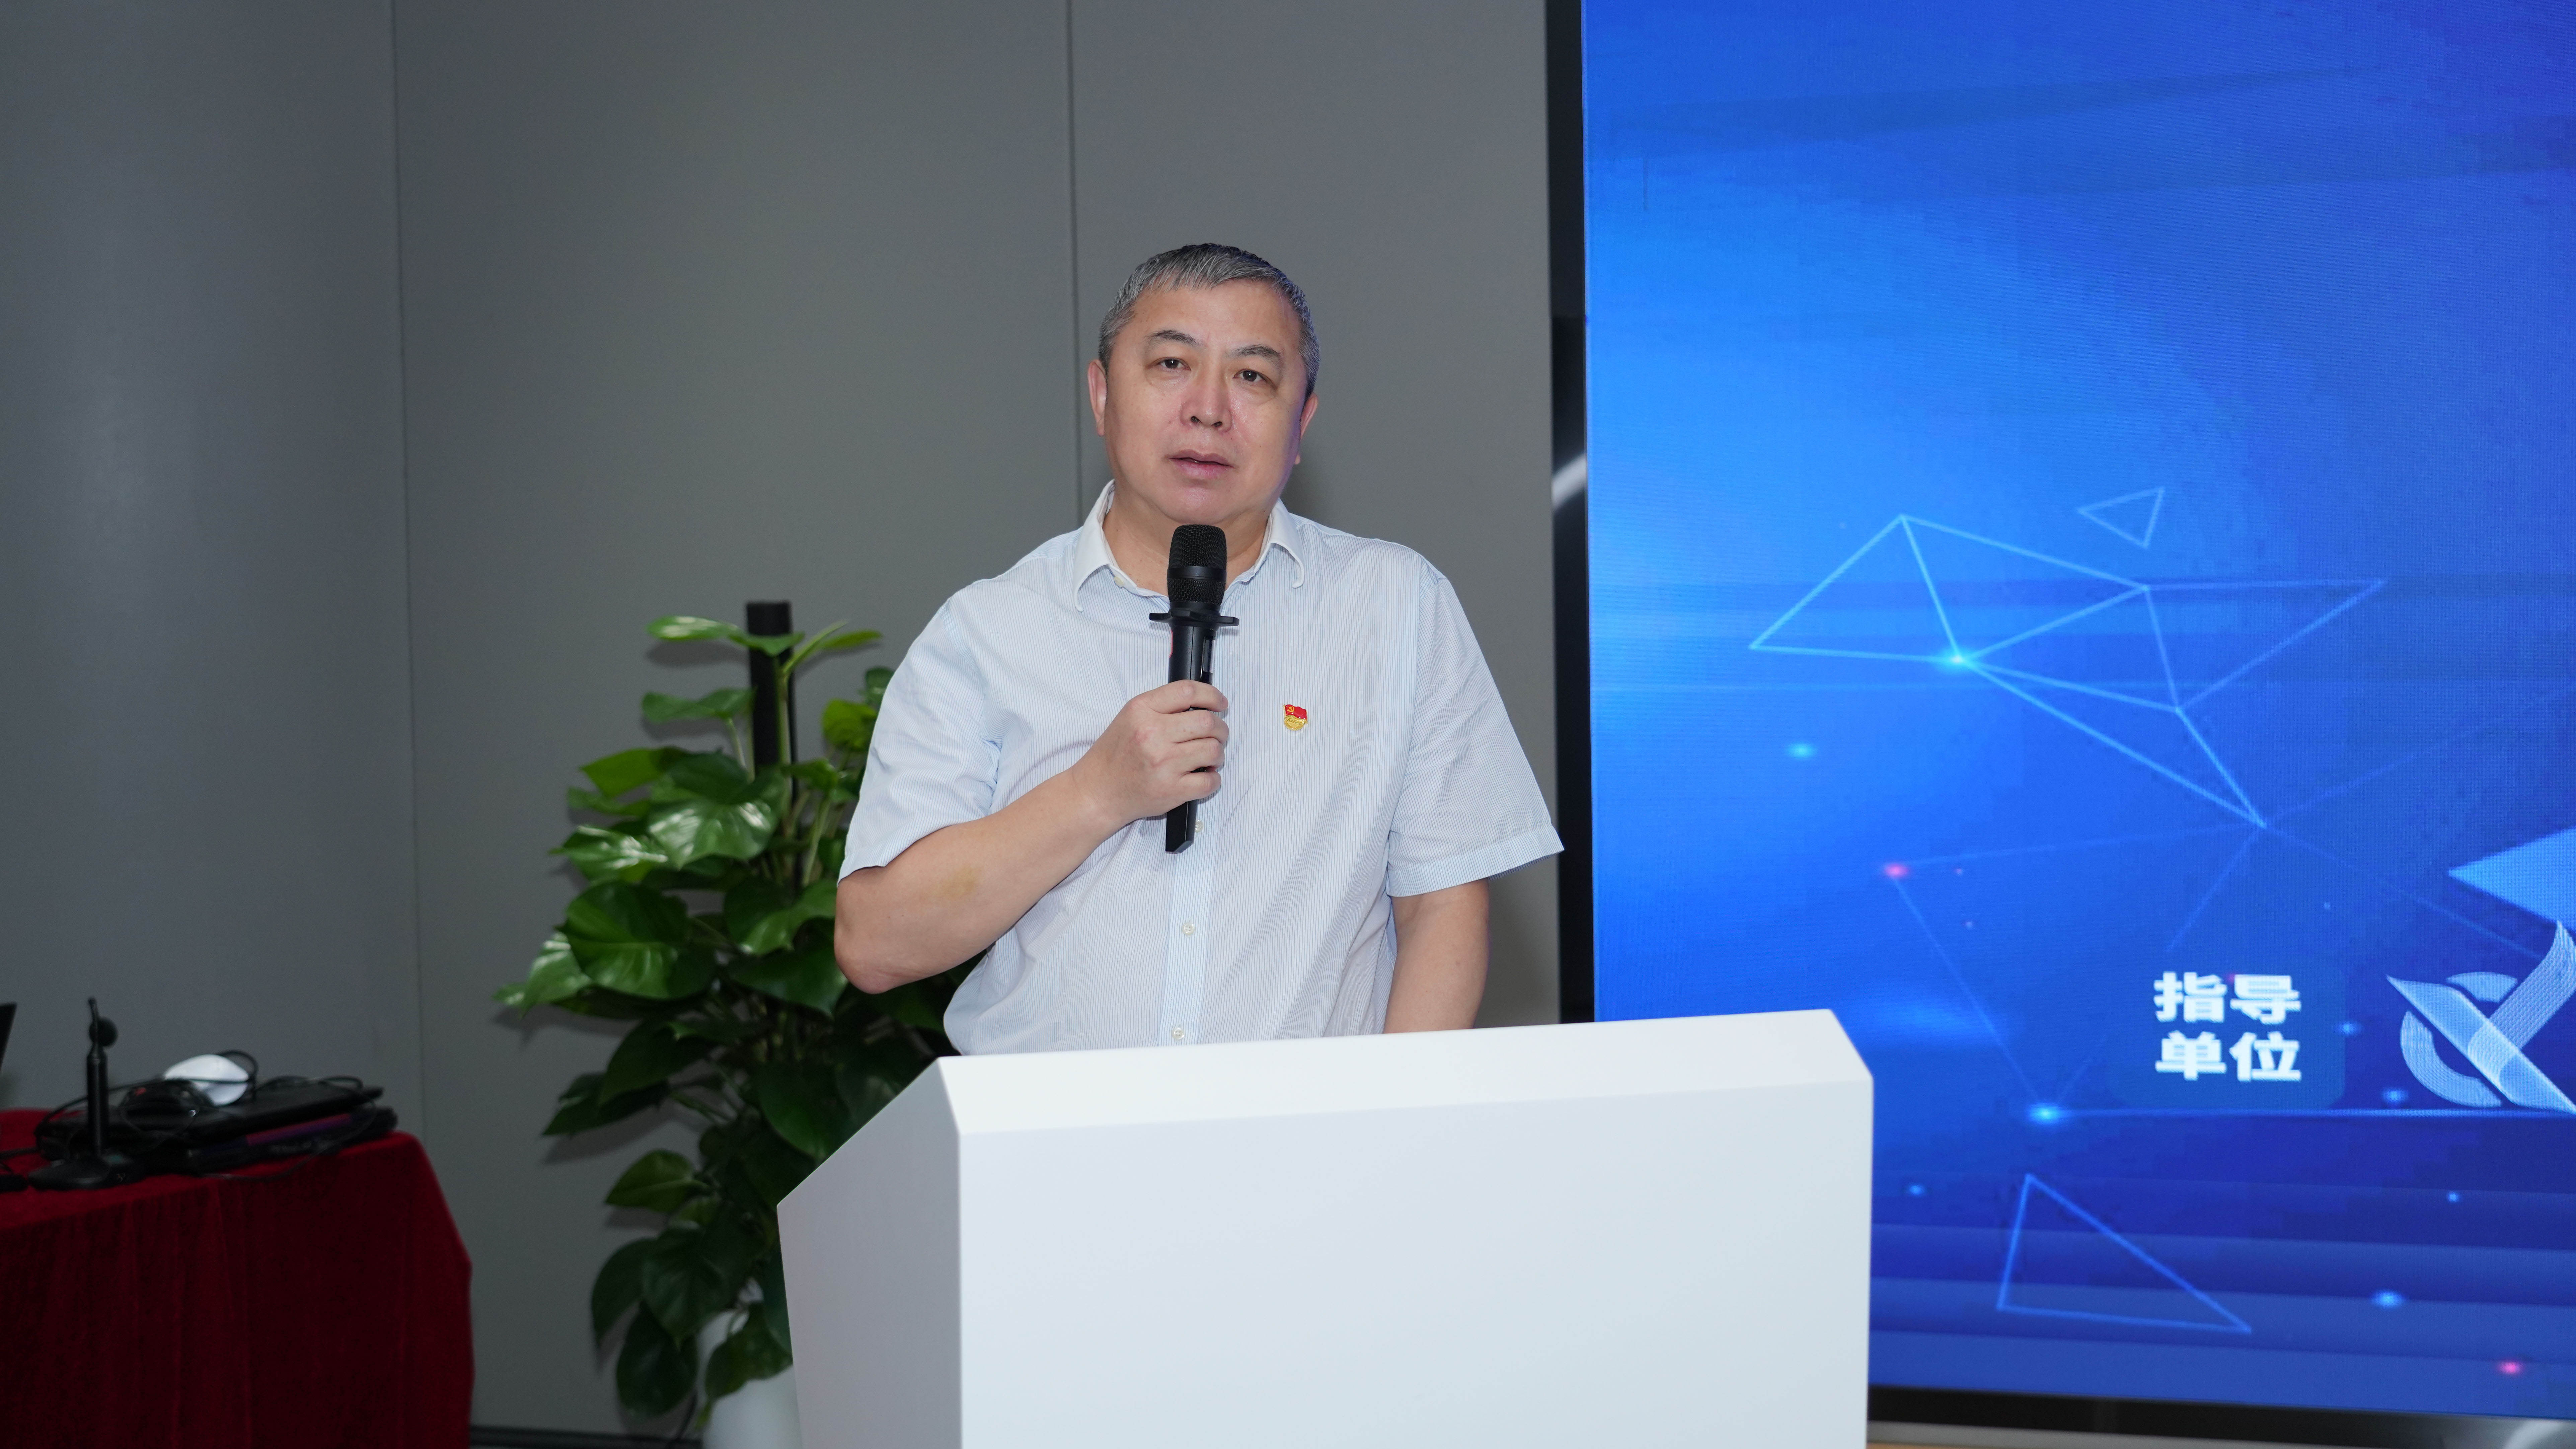 ShowMeBug CEO李亚飞受邀参加深圳青年创新创业系列沙龙电子信息专场